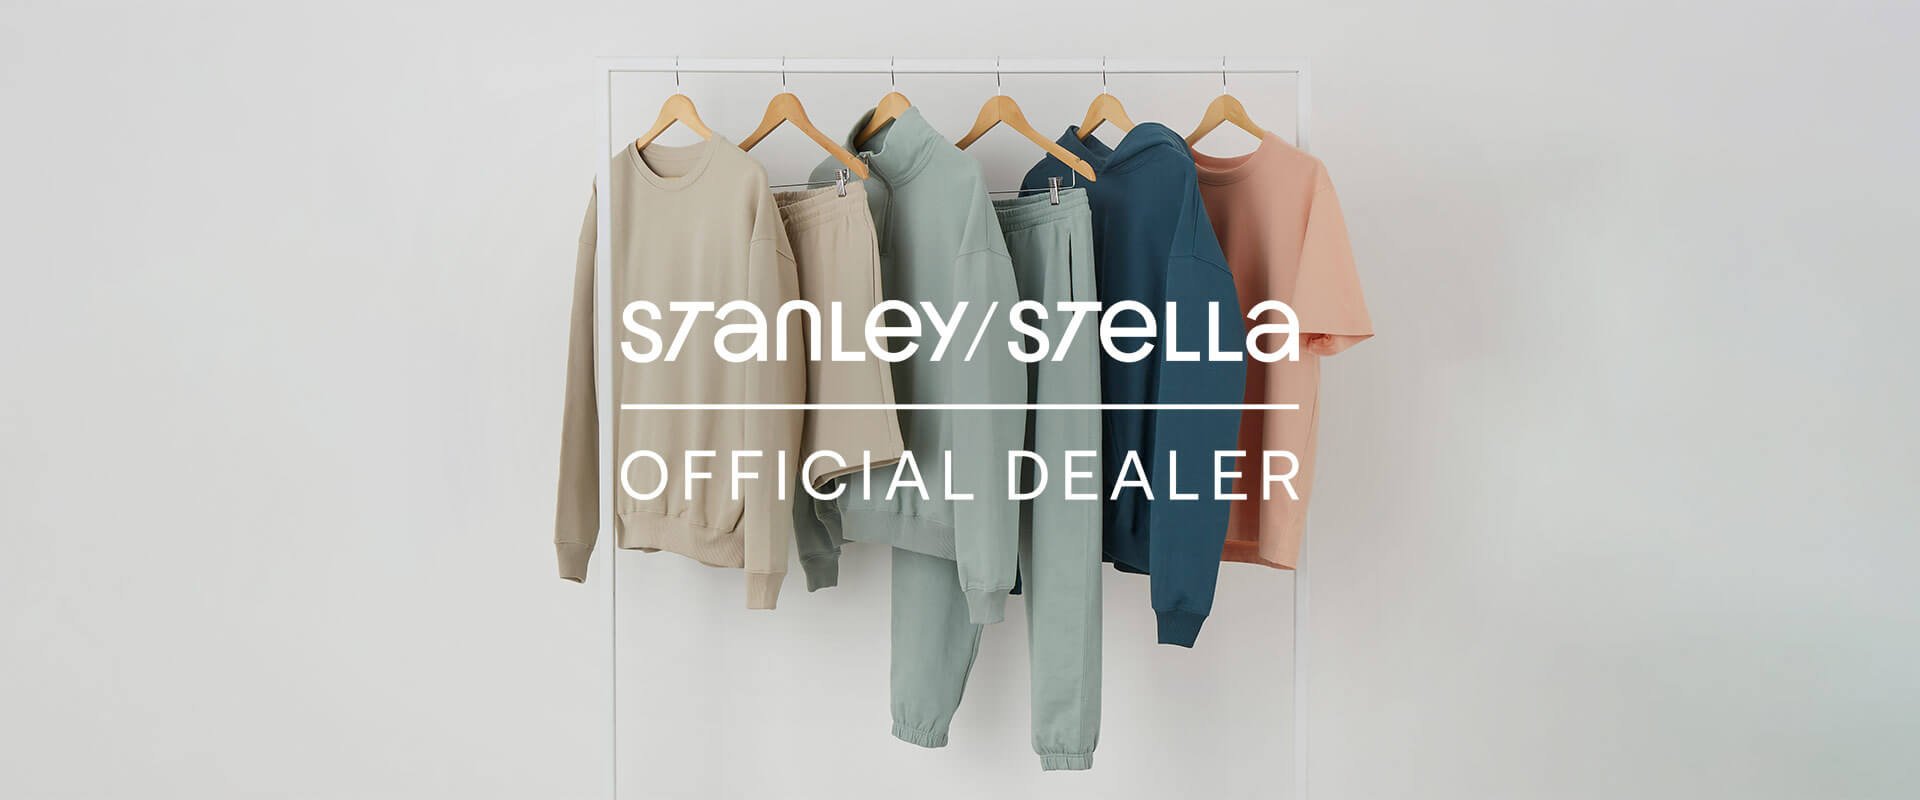 Stanley Stella official dealer